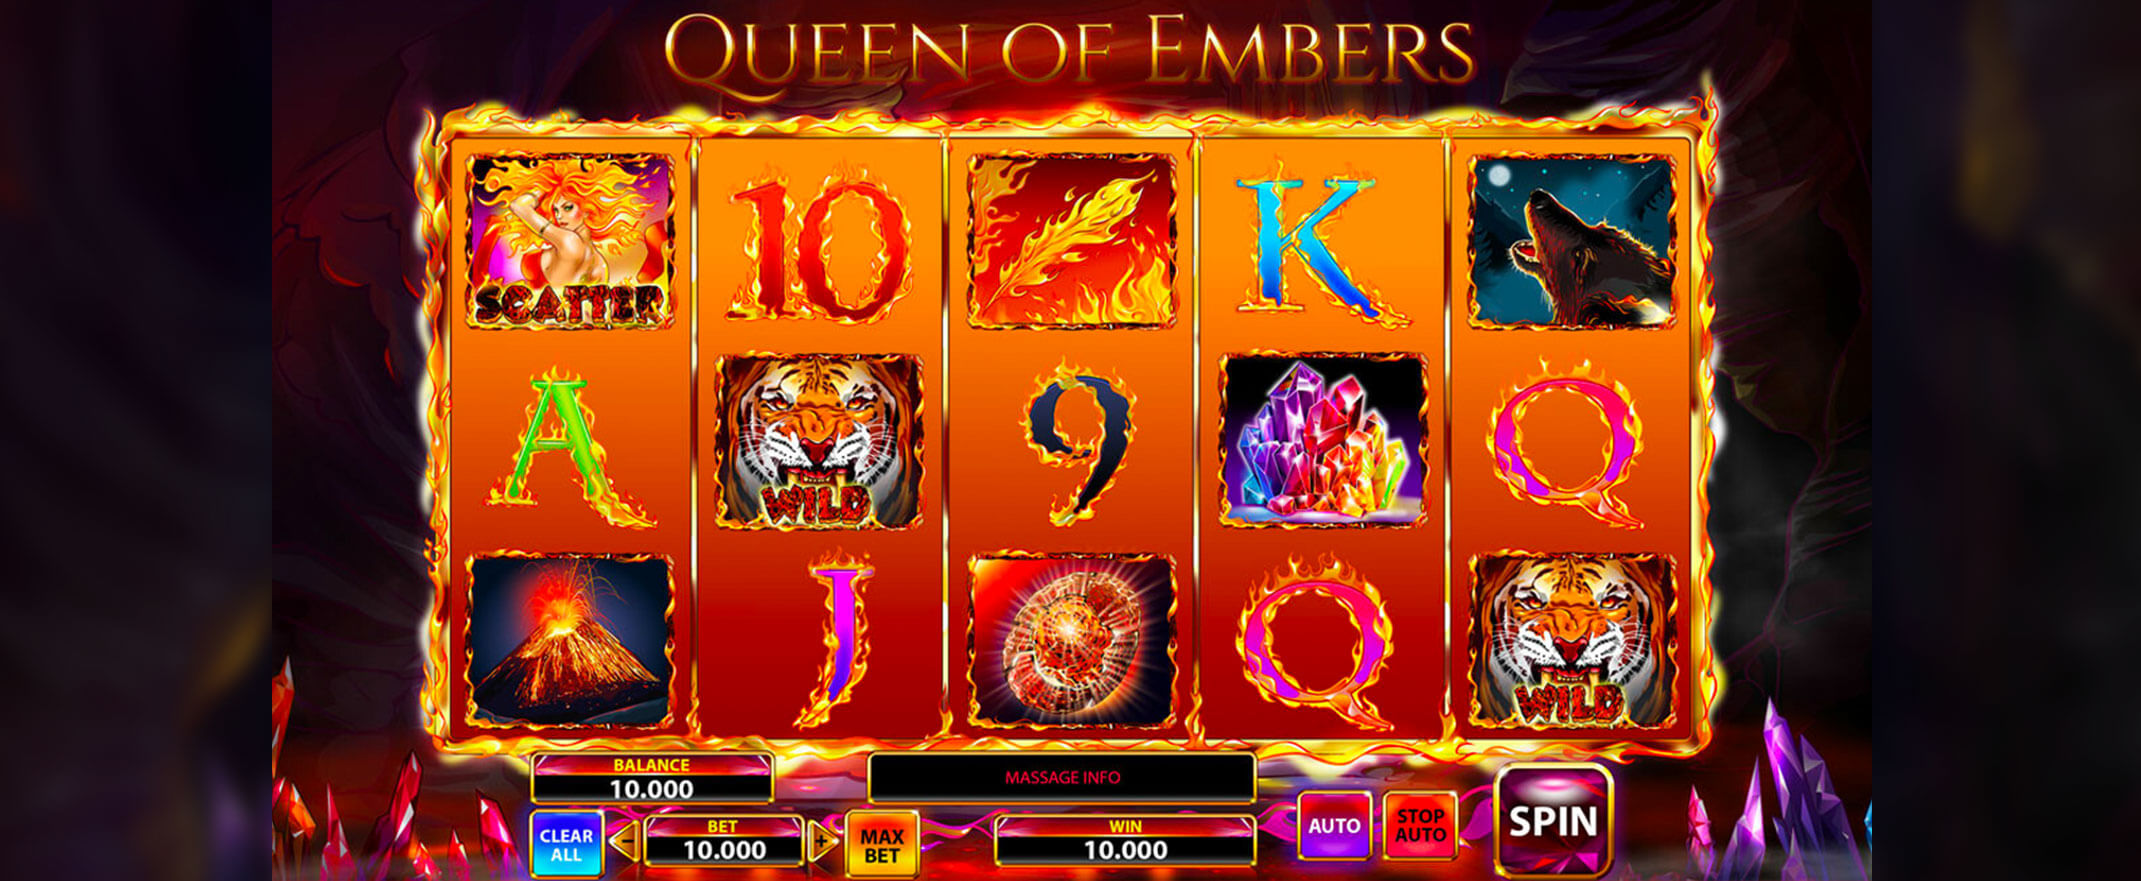 Queen of Embers screenshot